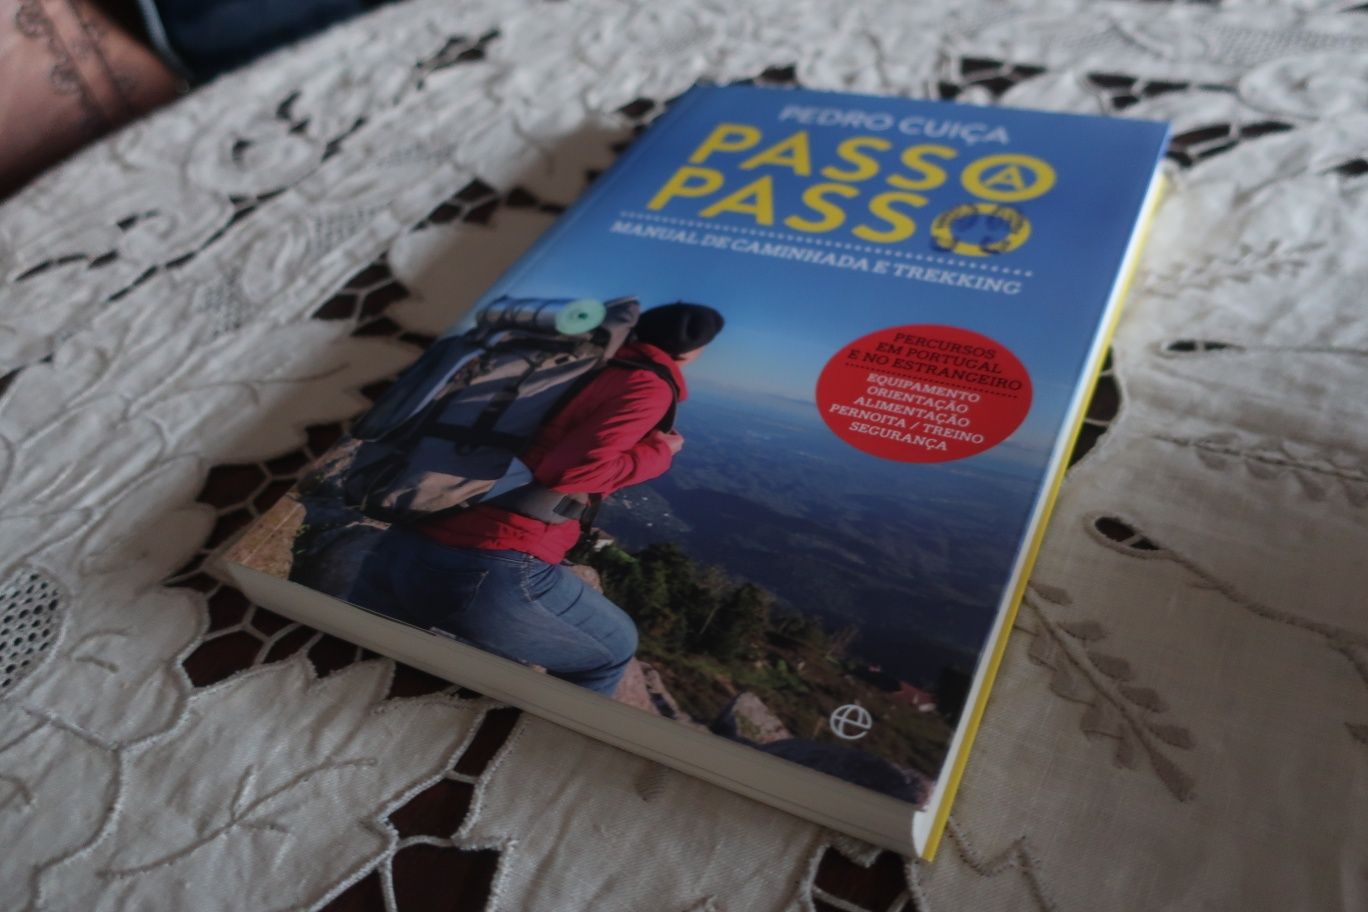 (Novo a estrear) Passo a Passo - Manual de Caminhada e Trekking
Manual